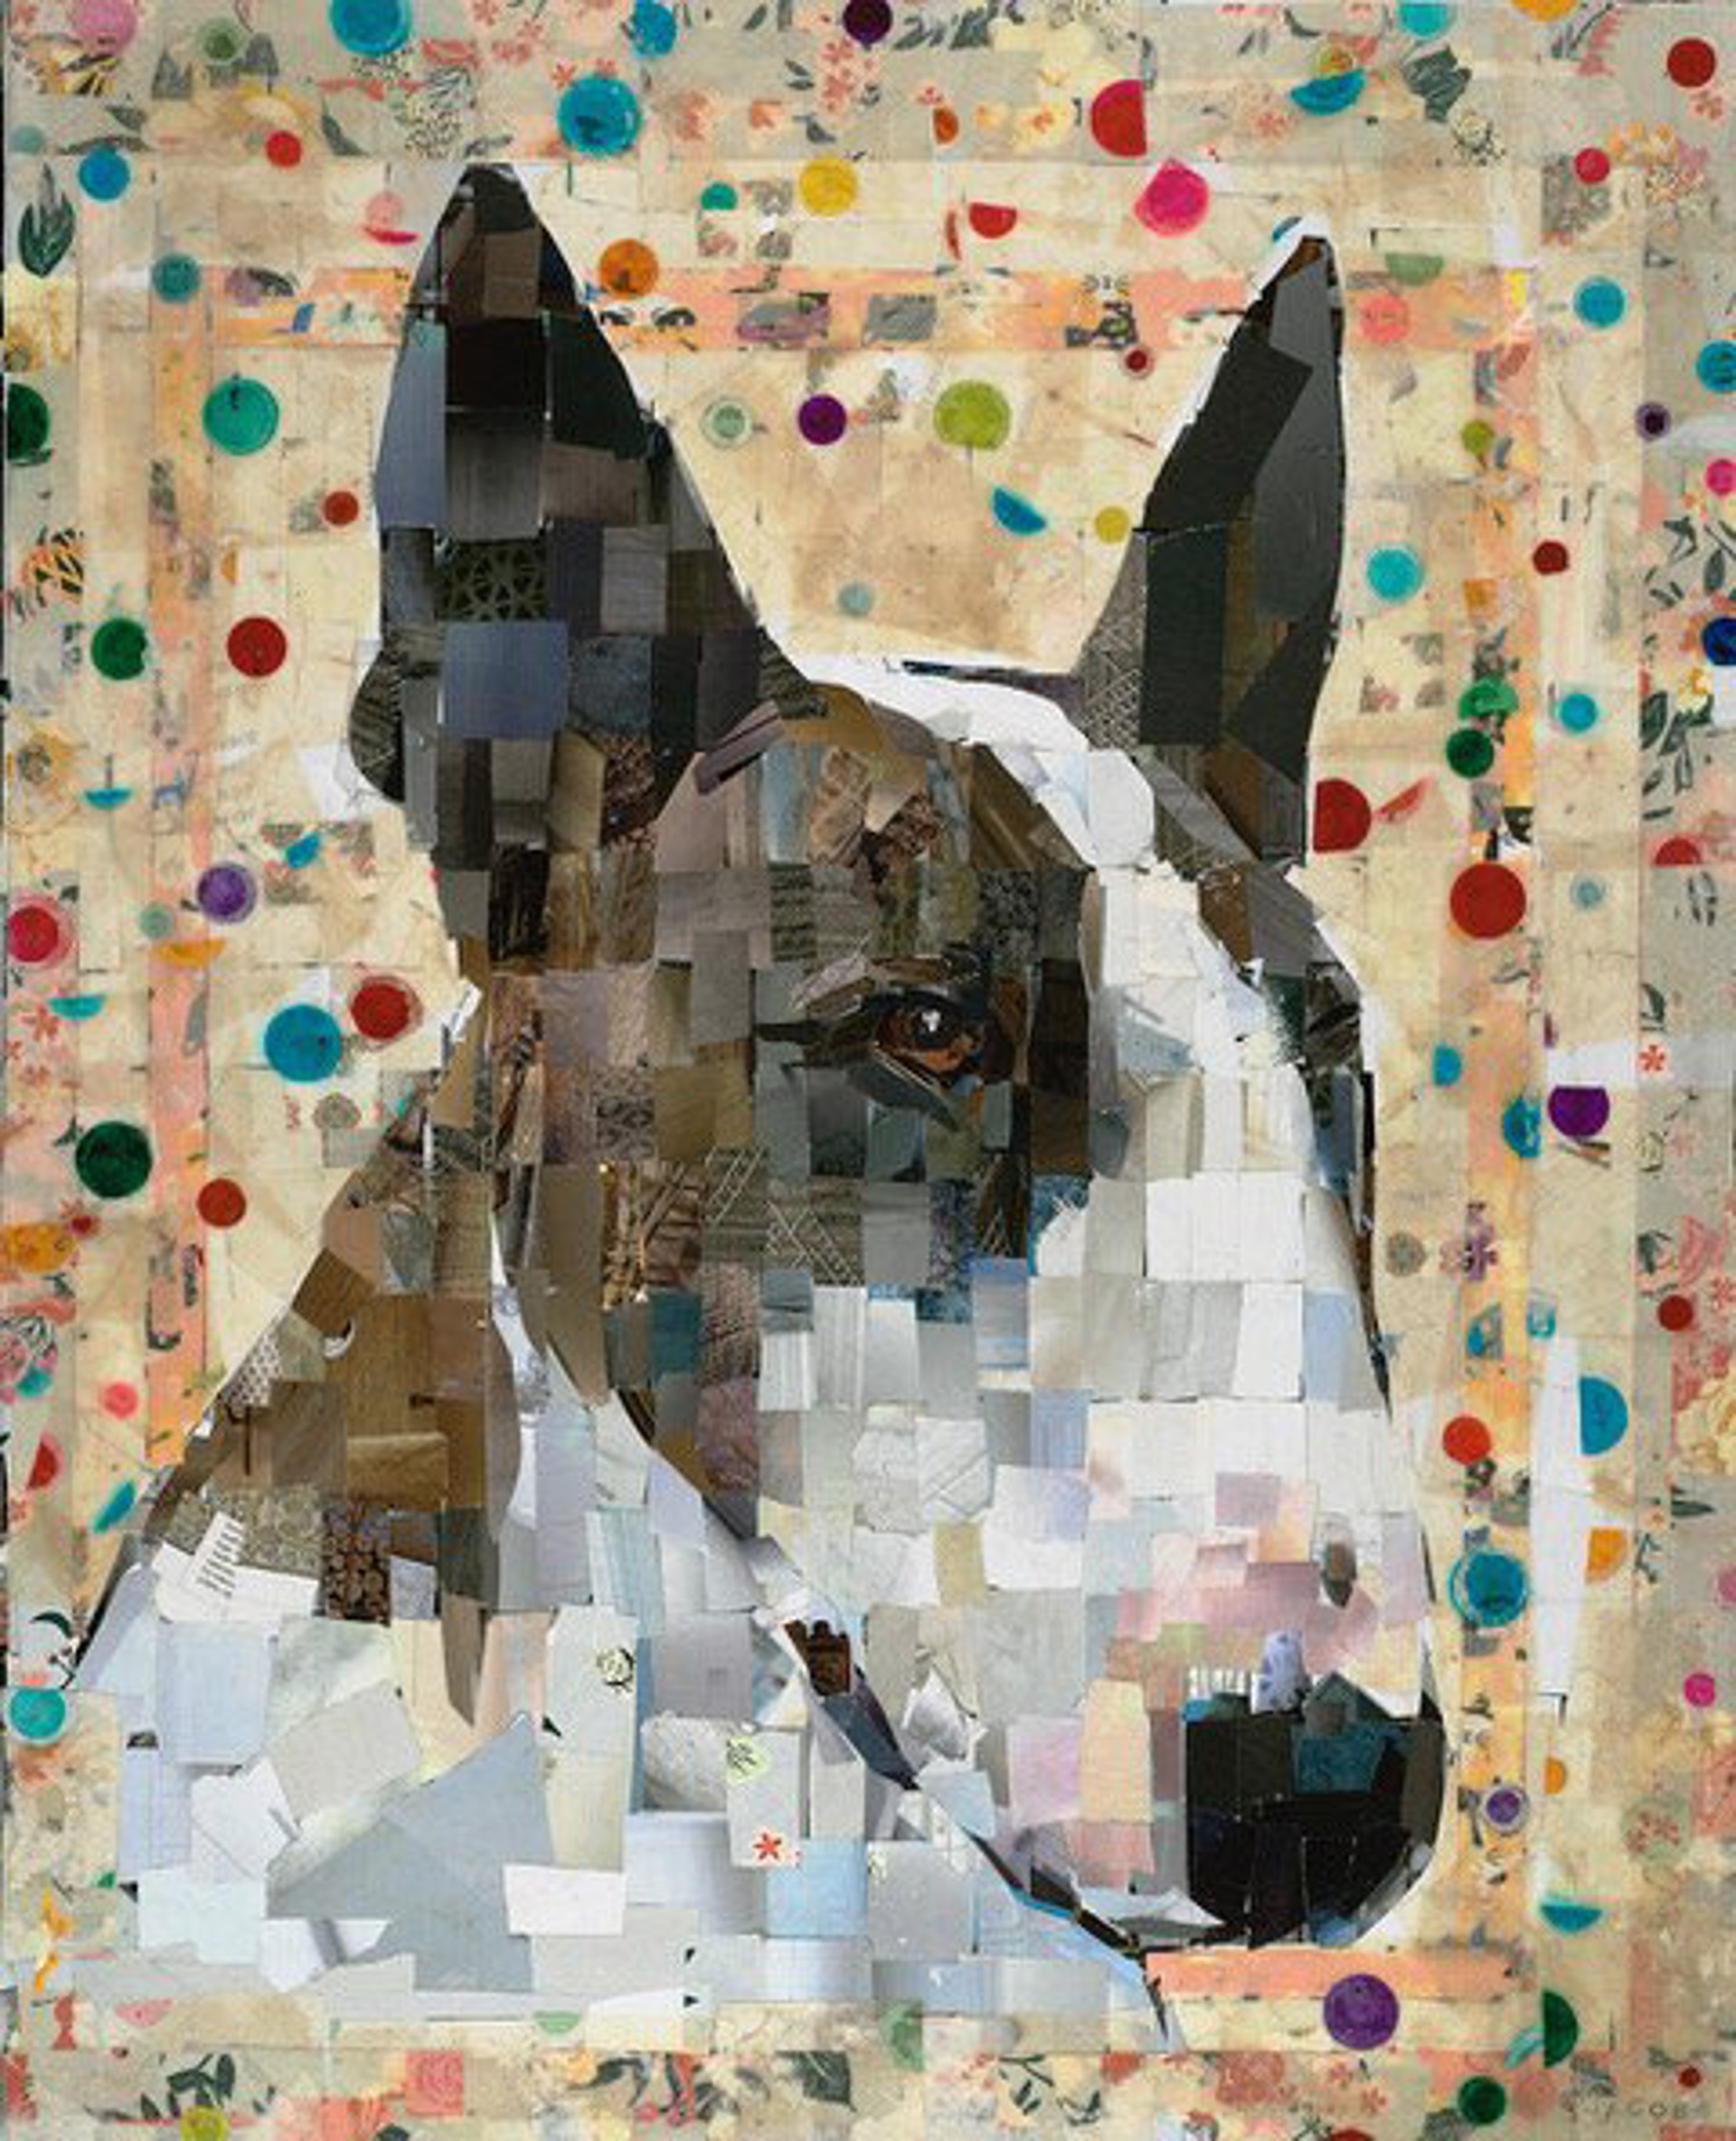 Neville The Bull Terrier by Samuel Price